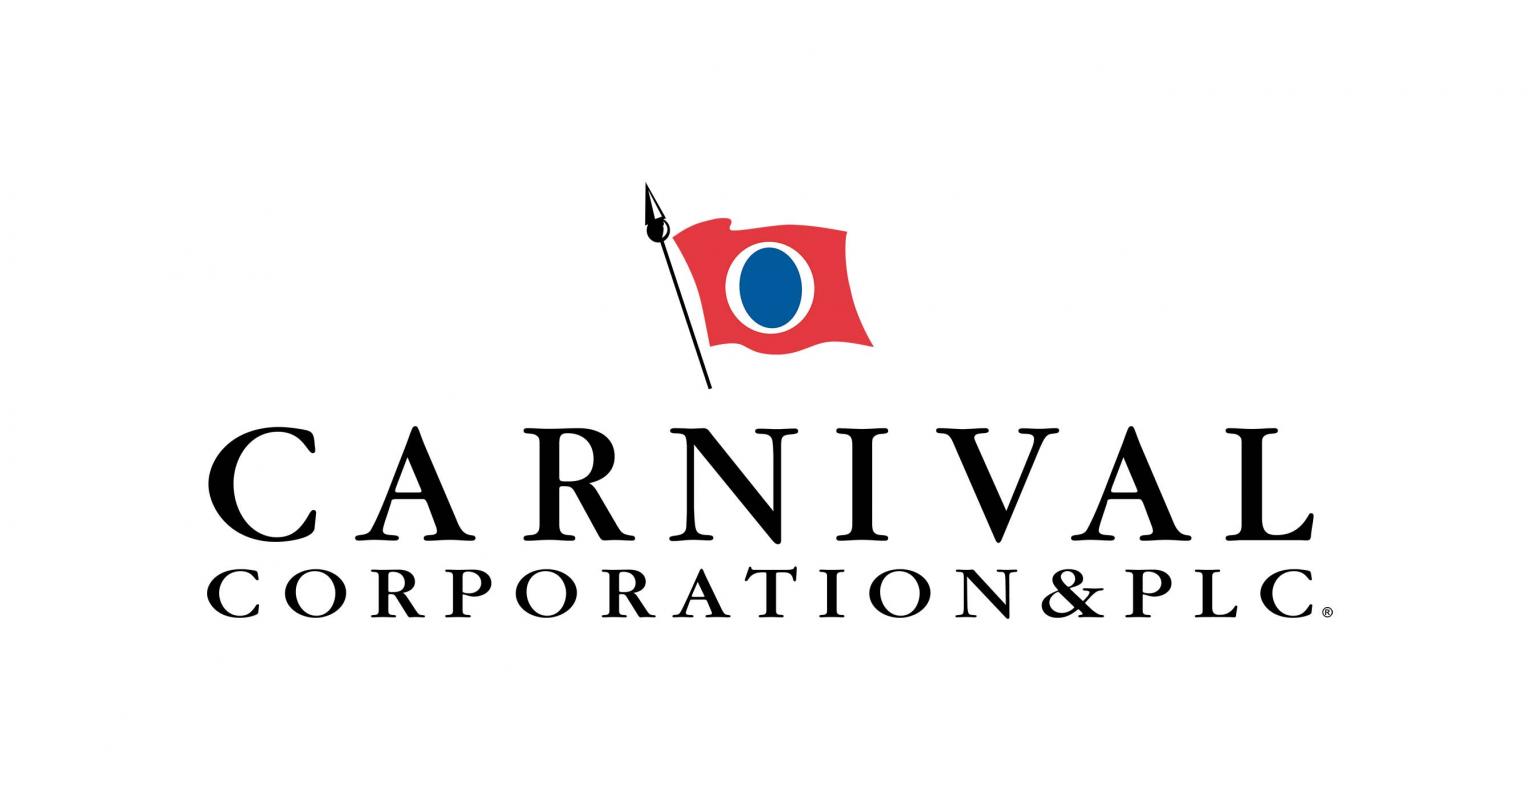 CARNIVAL-AKTIE DROHT KURSVERLUST AB 1. JUNI: Investoren kauften 71,9 Millionen Carnival-Aktien zu acht US-Dollar, Kurs verdoppelt, lockdown-Frist läuft aus